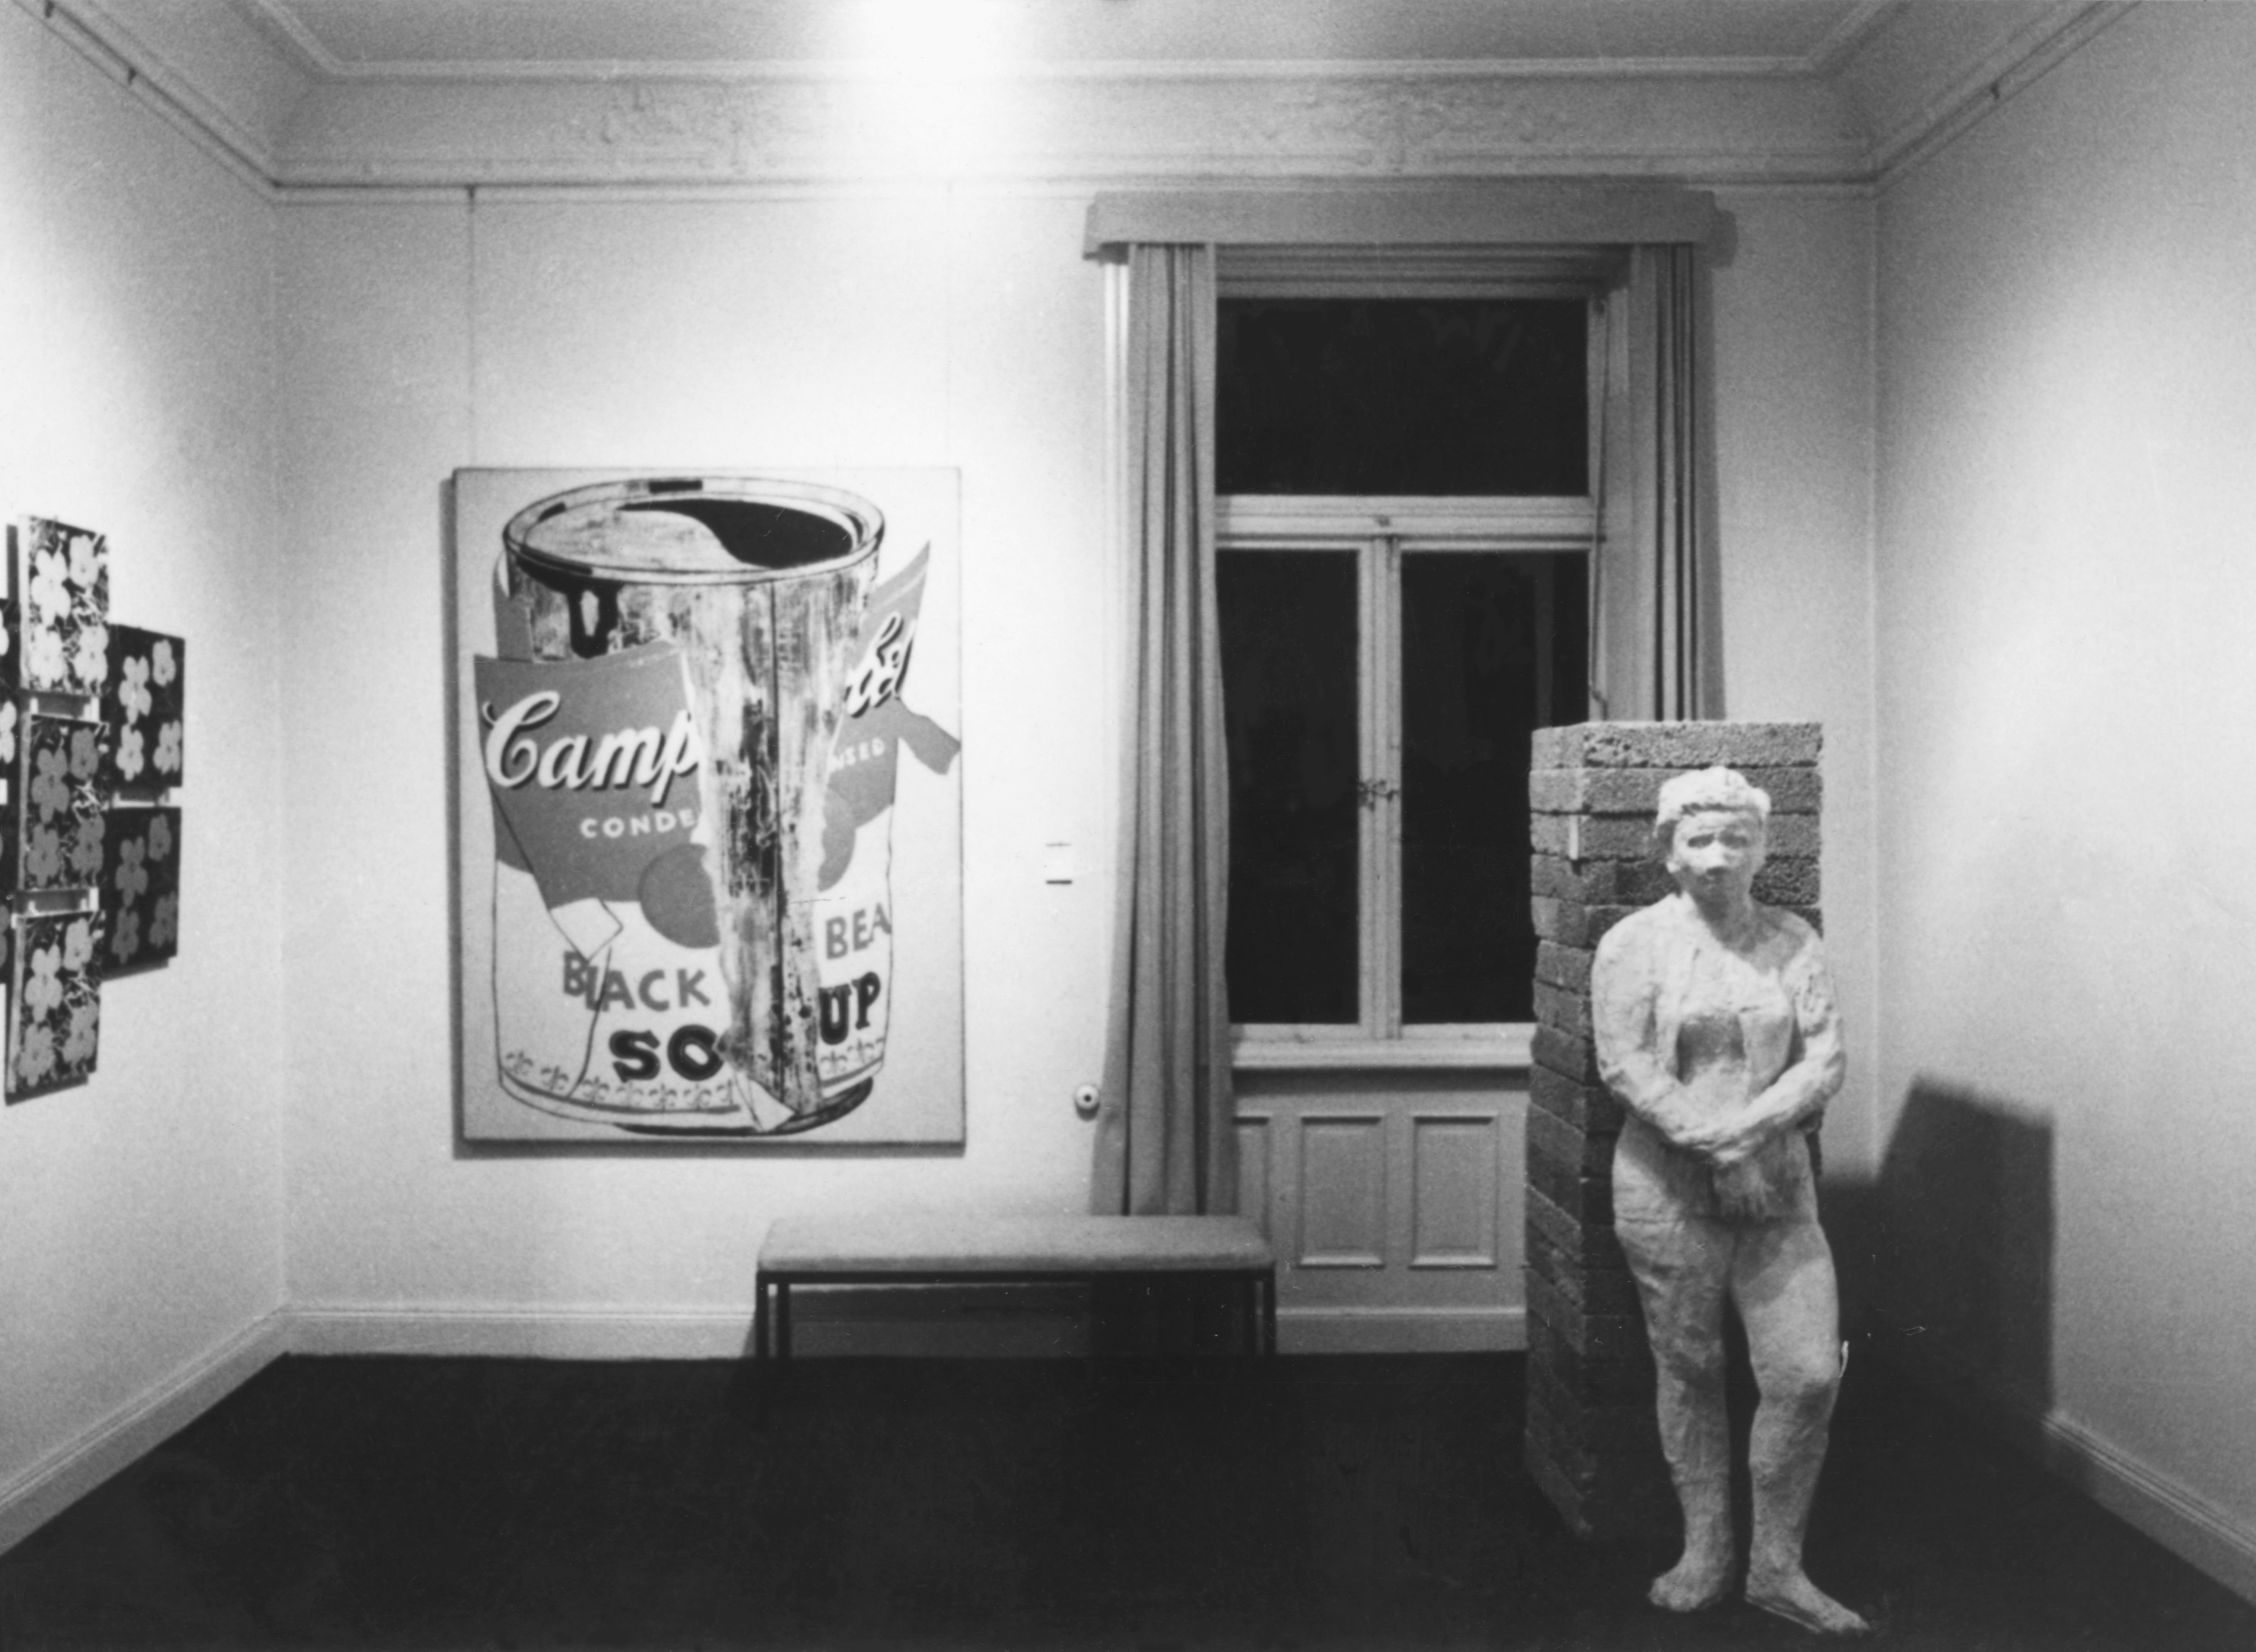 Neuendorf Gallery, Hamburg, Germany 1964.